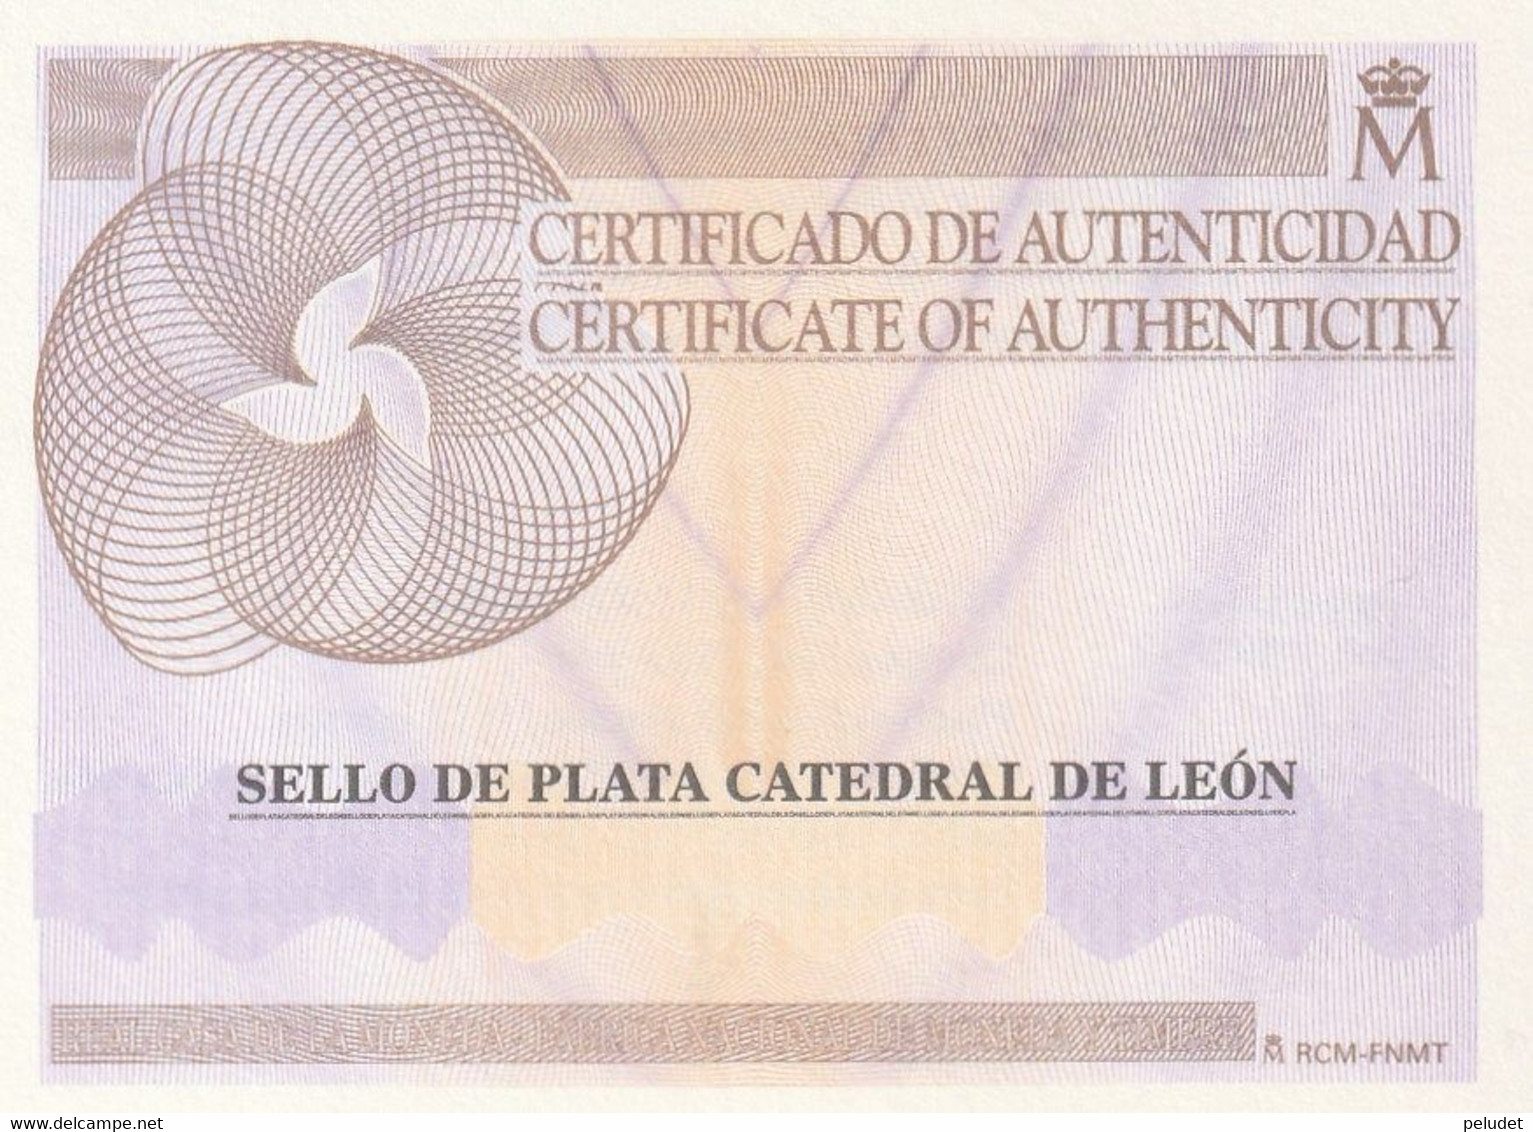 Spain - Espagne, 2012 Catedrales - Catedral León - Cathedrals - Cathedral Leon, Prueba Artista - Artist Proof Stamp(1) - Proeven & Herdrukken